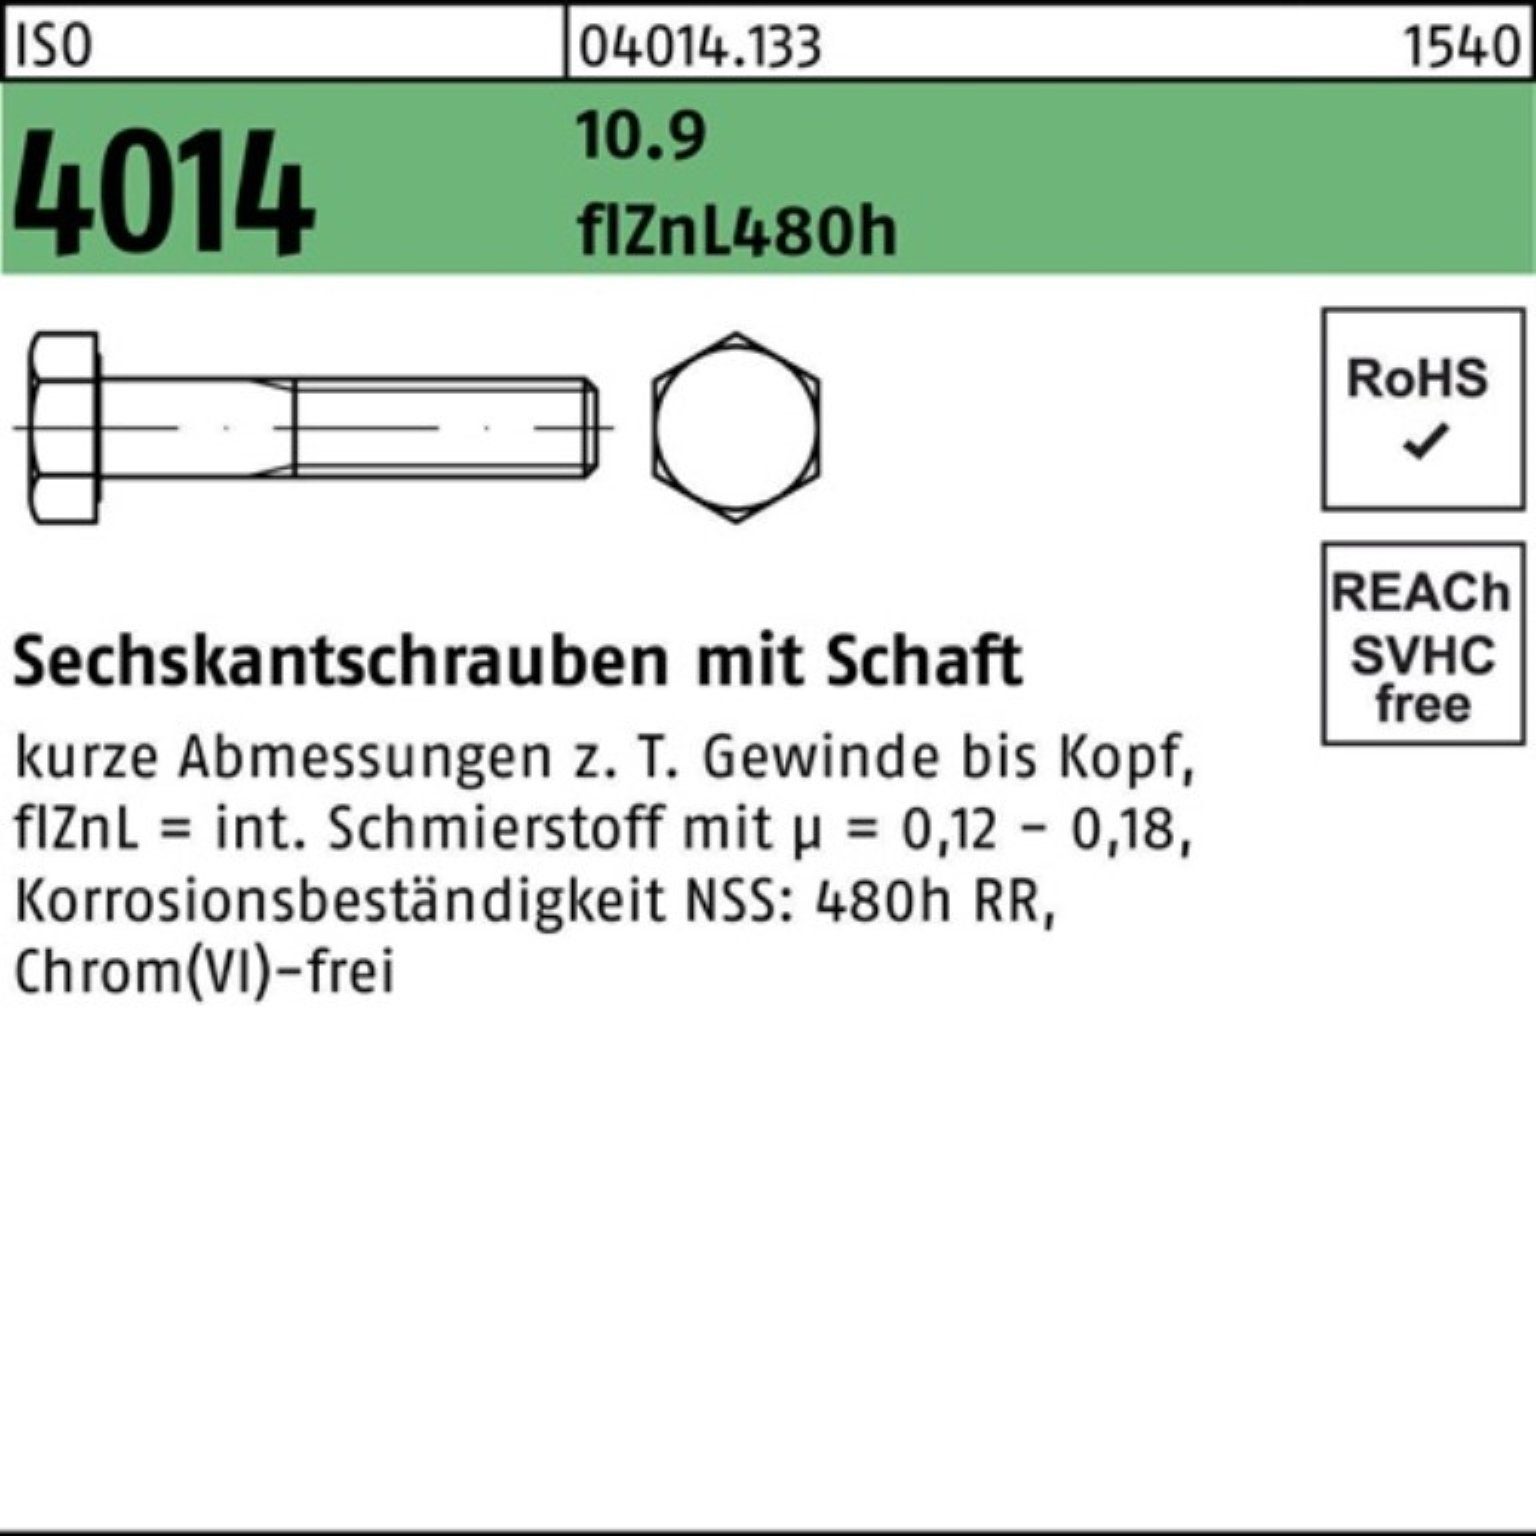 Bufab Sechskantschraube 100er Pack Sechskantschraube M16x 4014 130 Schaft 10.9 zinklamelle ISO